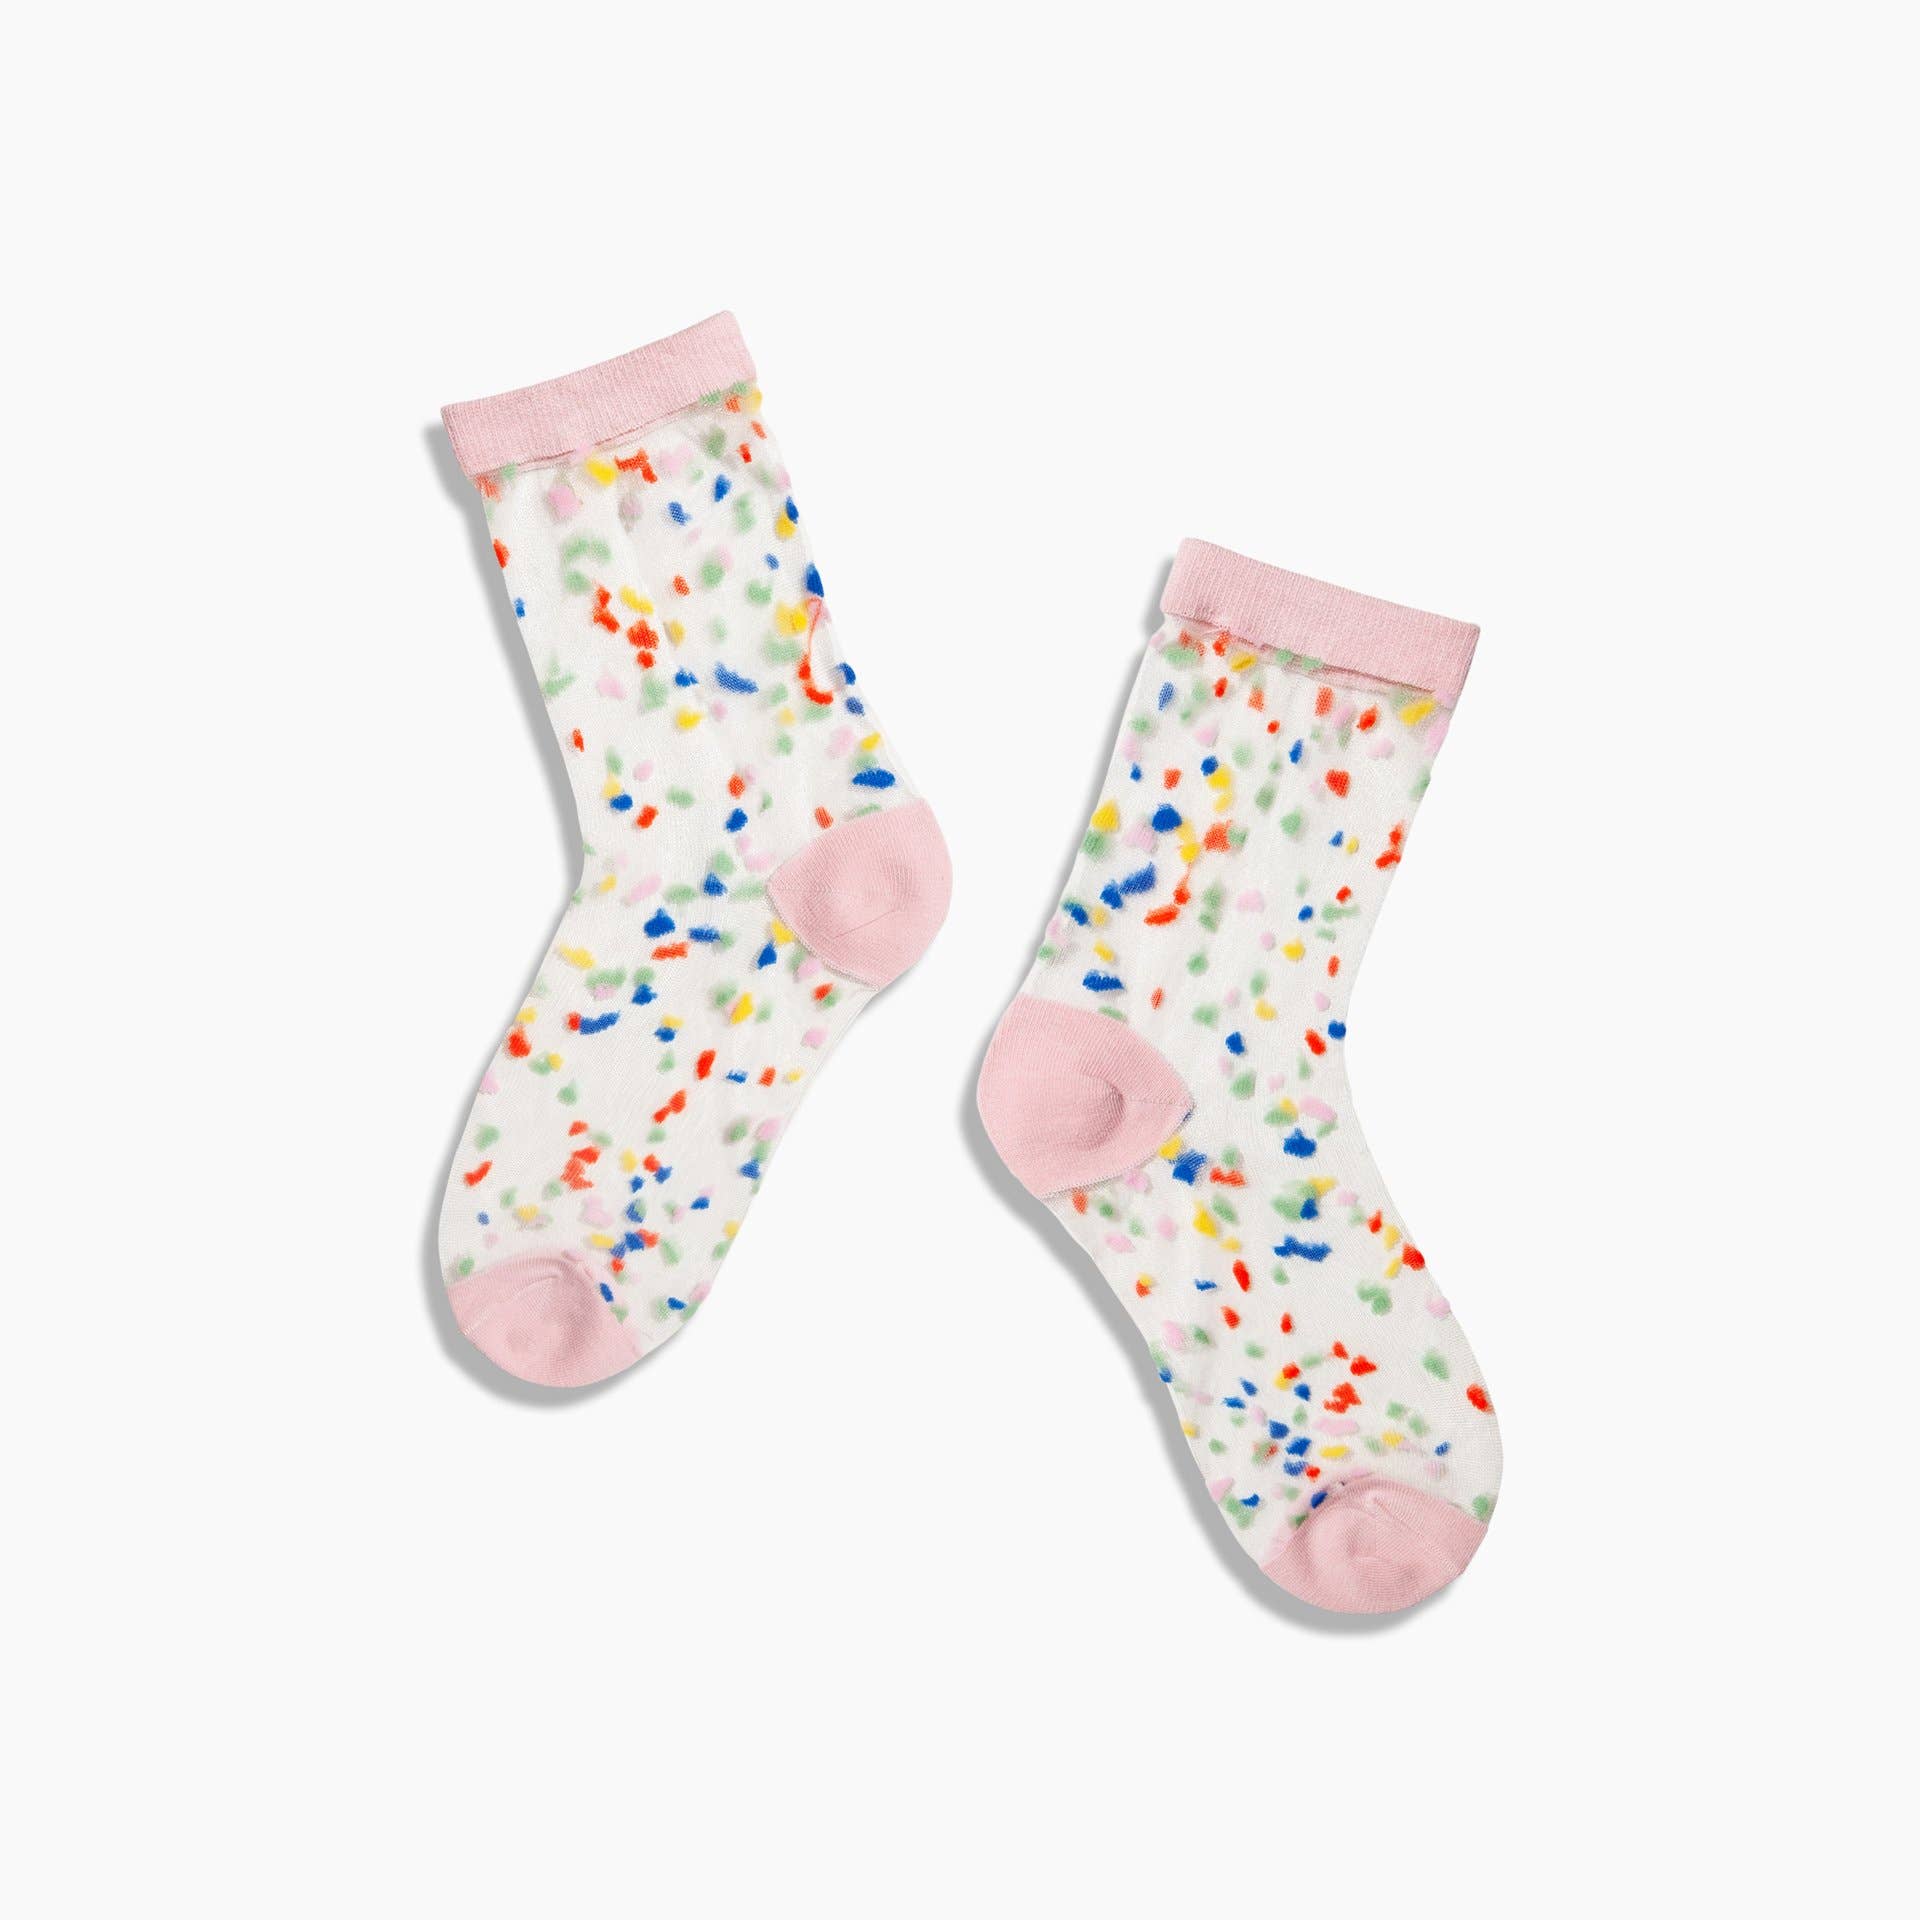 Poketo - Sheer Socks in Confetti